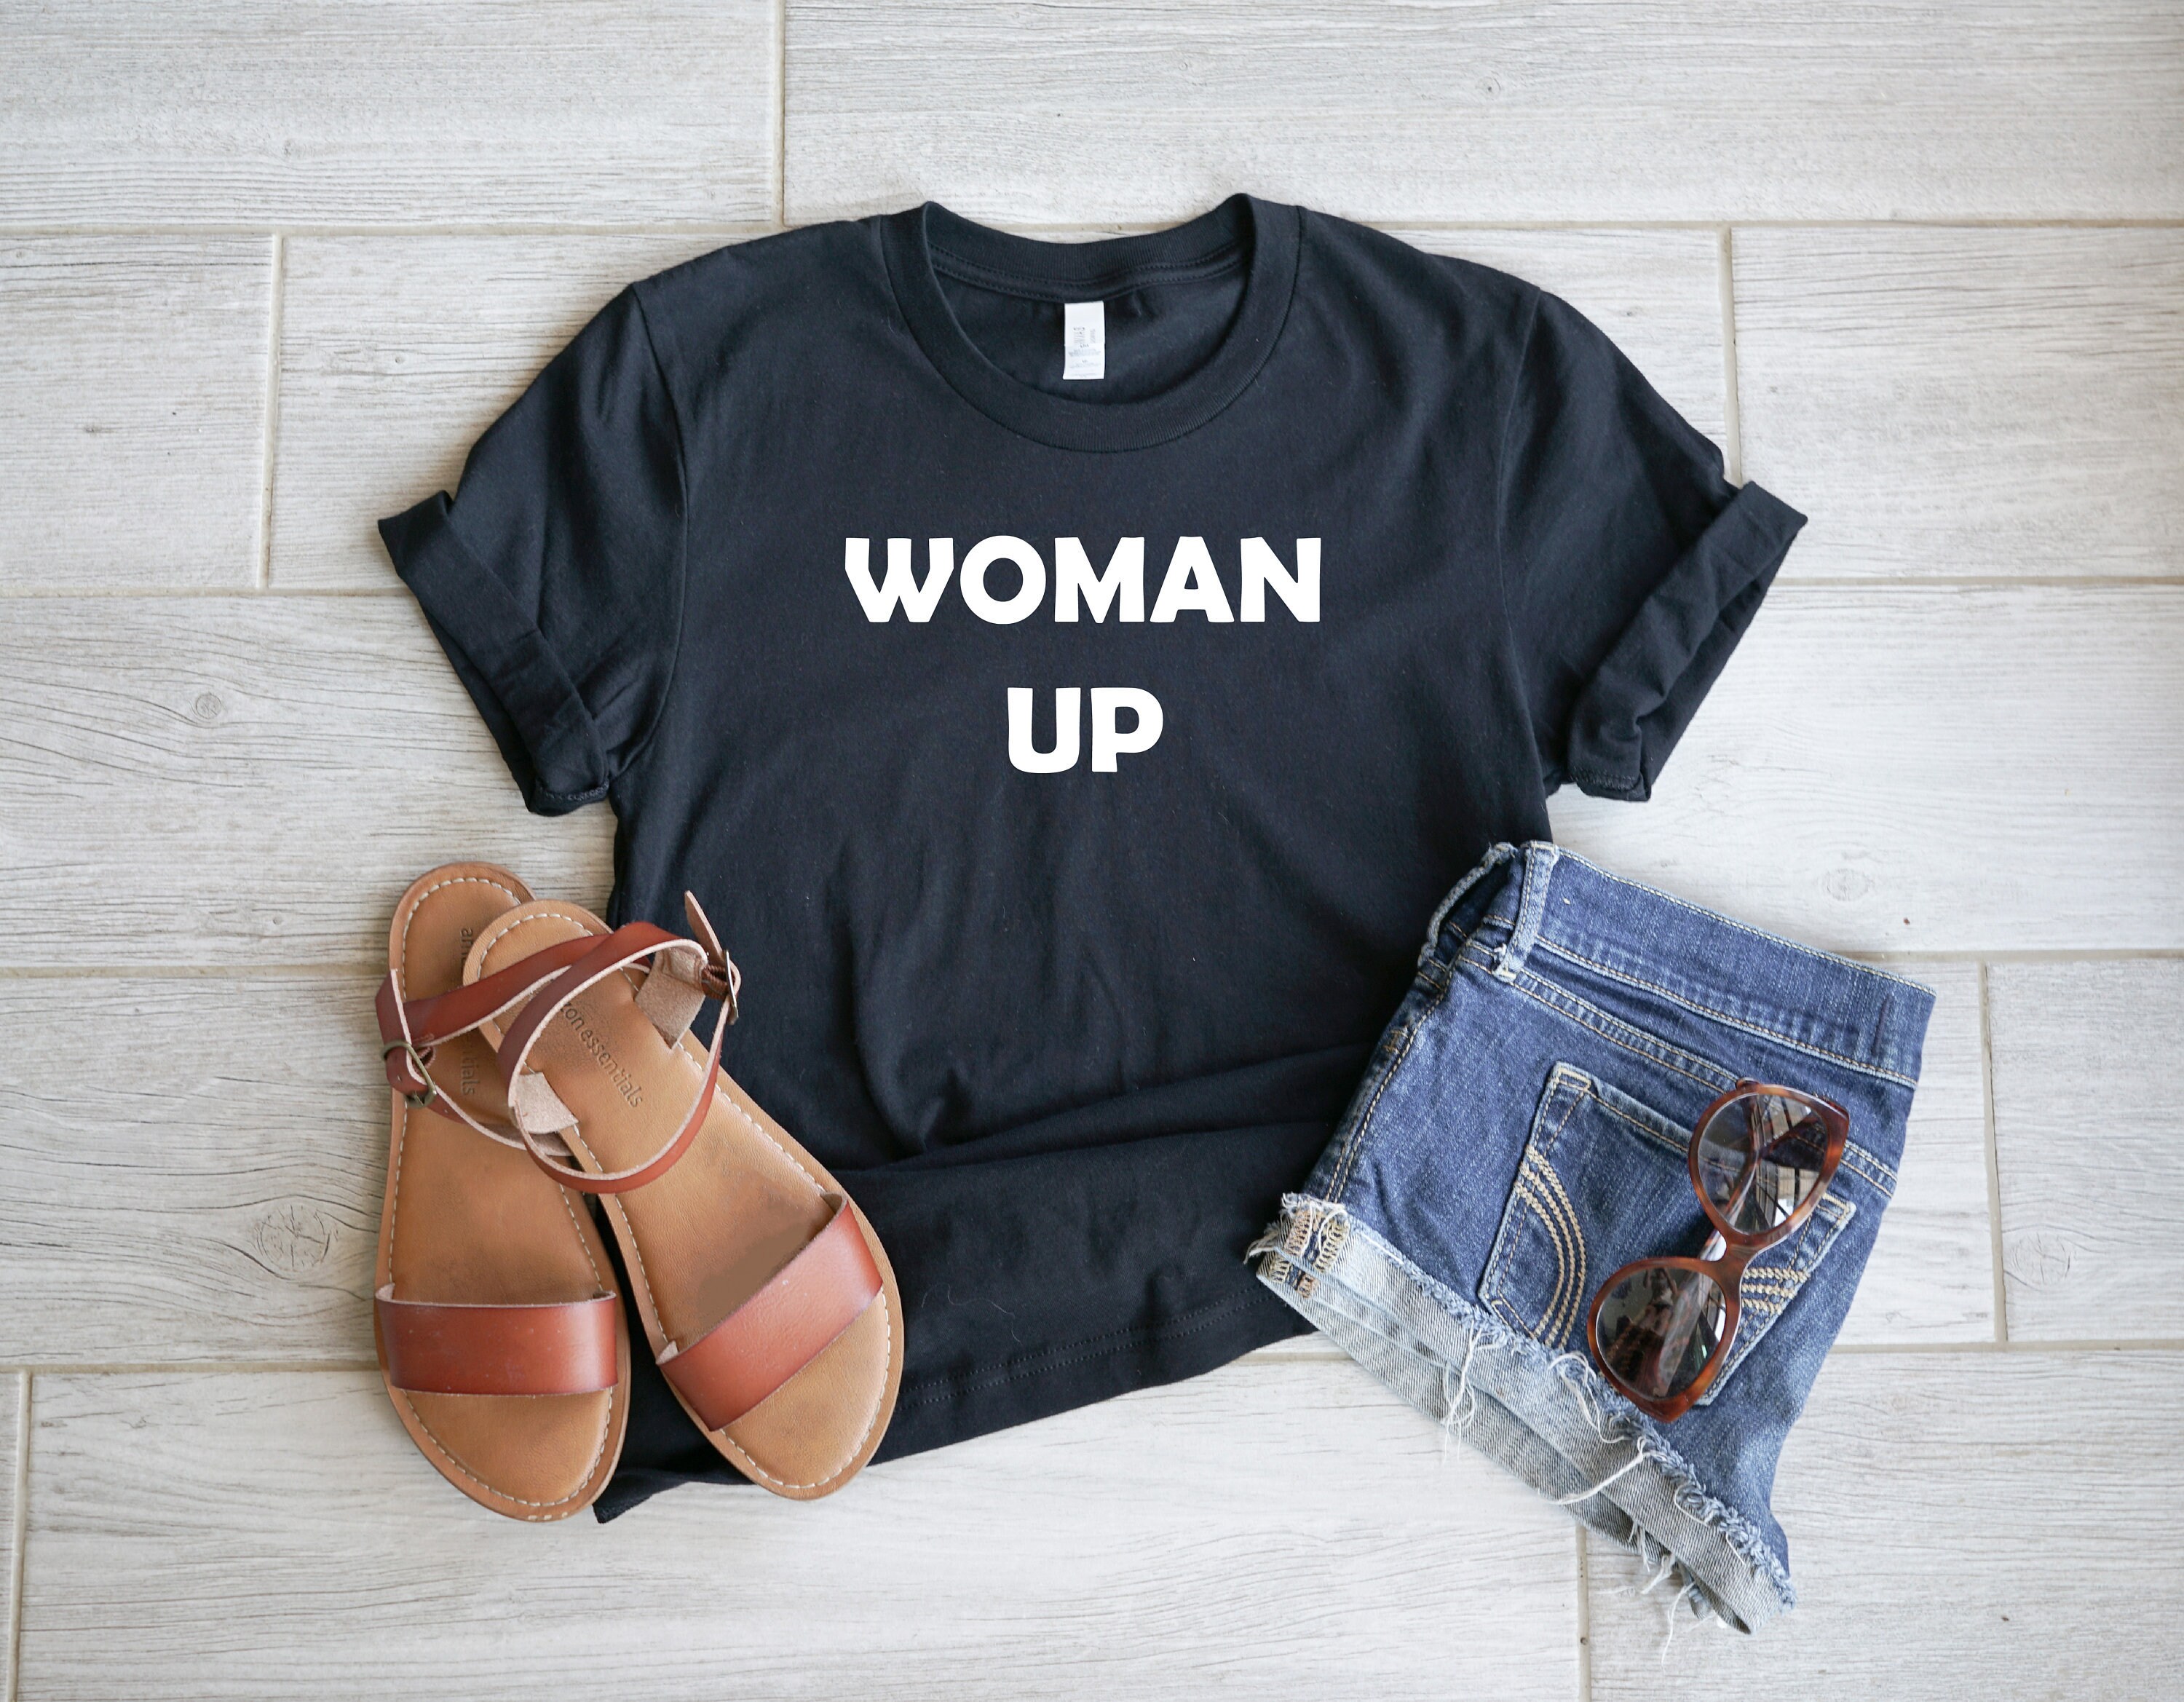 Discover Woman Up Shirt, Feminist Shirt, Women Empowerment, Women Up T-shirt, Motivational Shirt, Inspirational Shirt, Woman Up